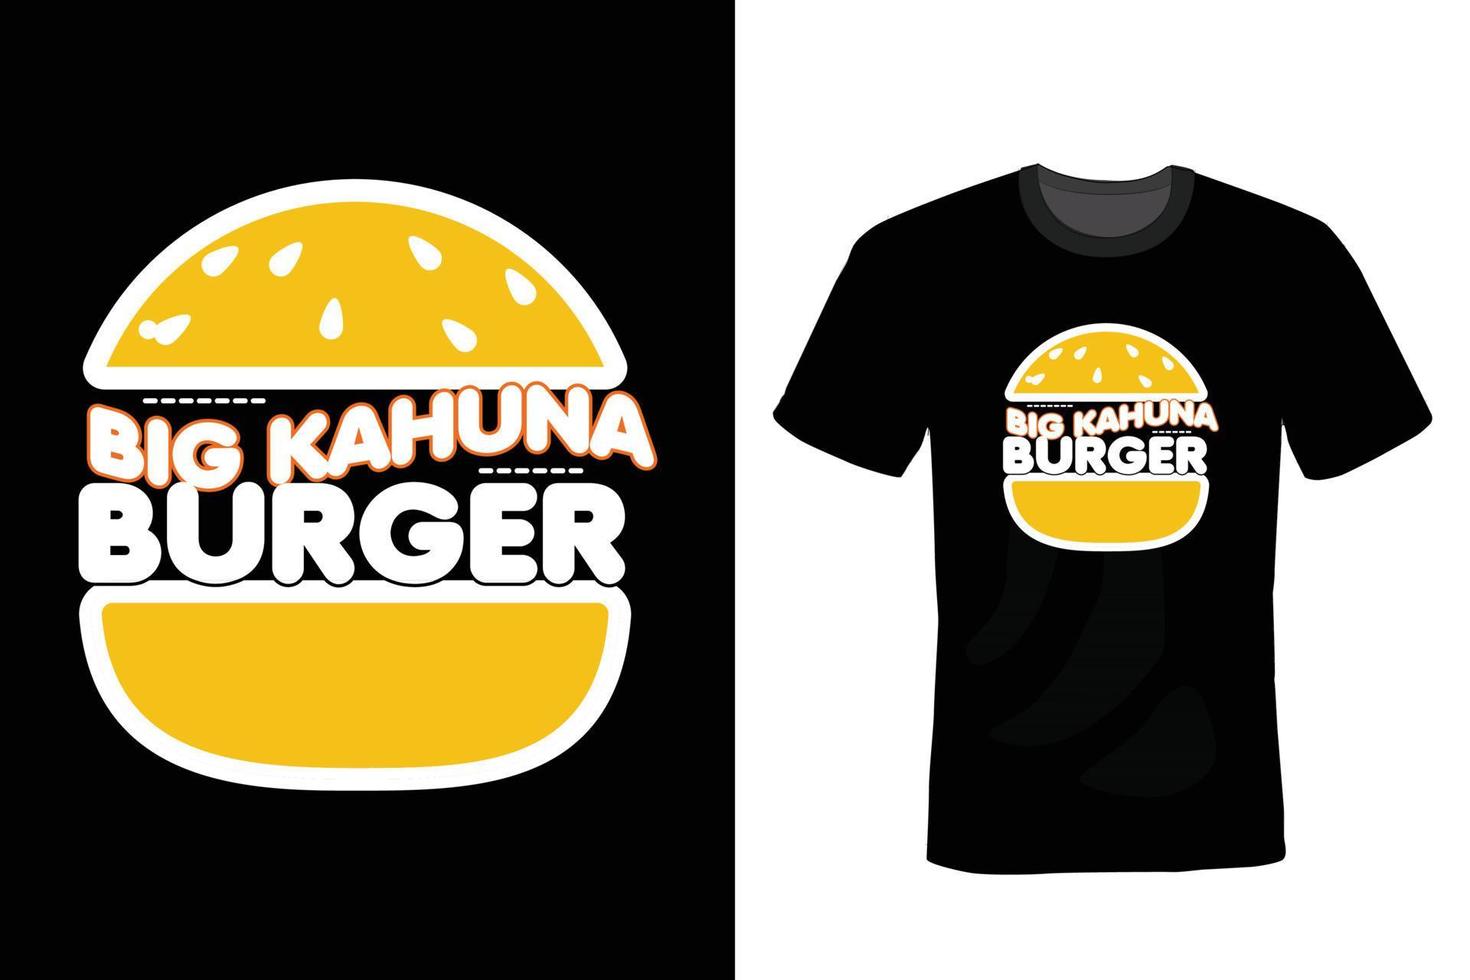 design de camiseta de hambúrguer, tipografia, vintage vetor